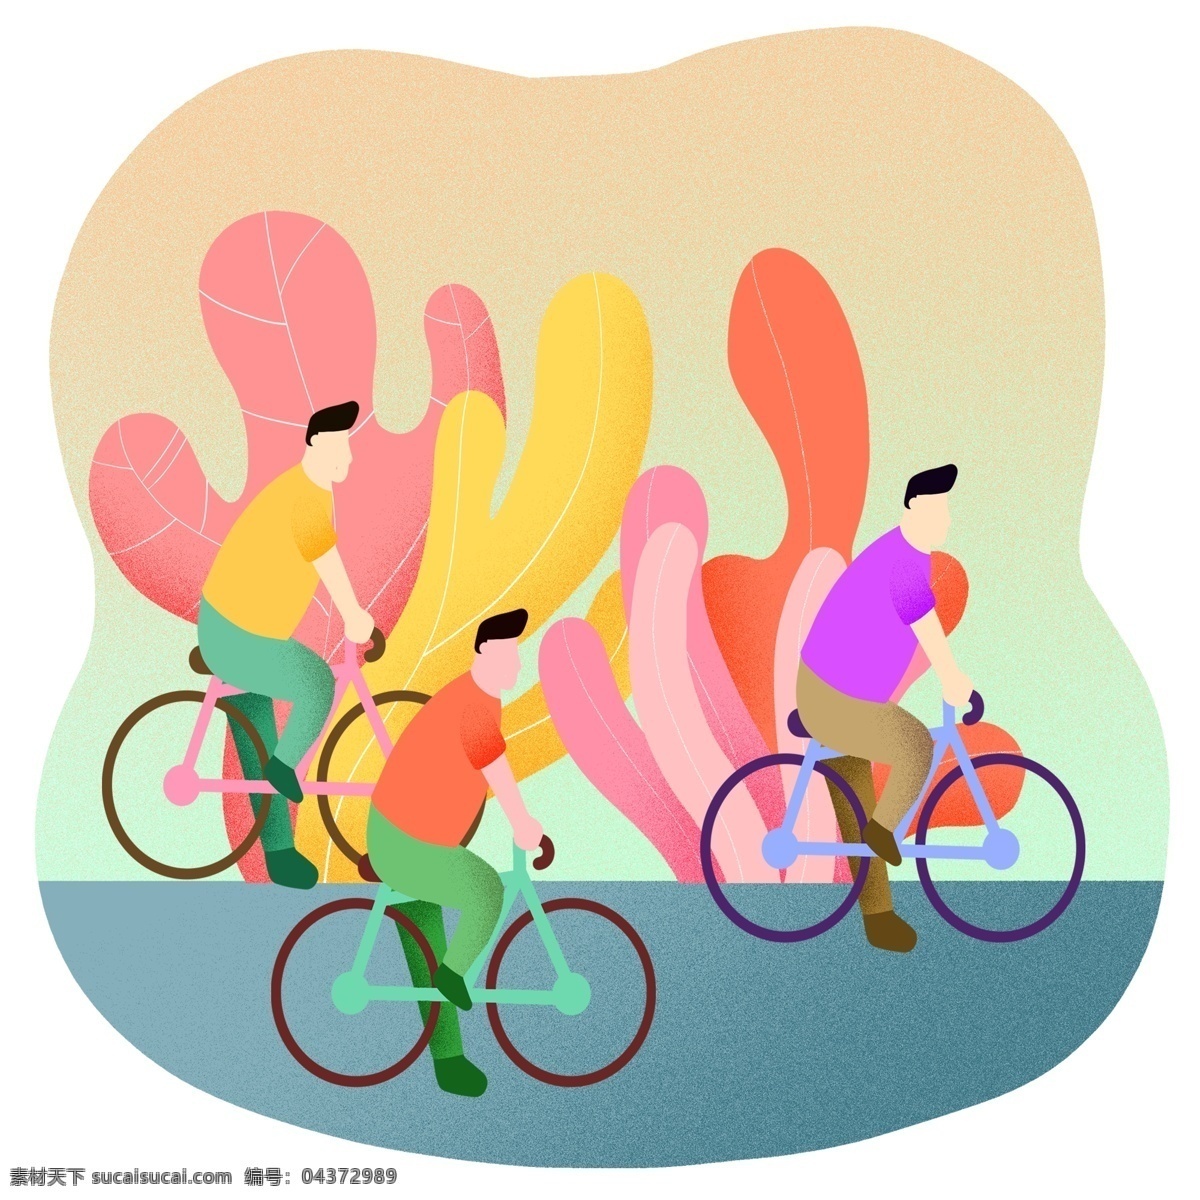 扁平 风 骑 自行车 插画 运动 骑车 动感单车 健身 生活 身体 车子 植物 小清新 免扣png